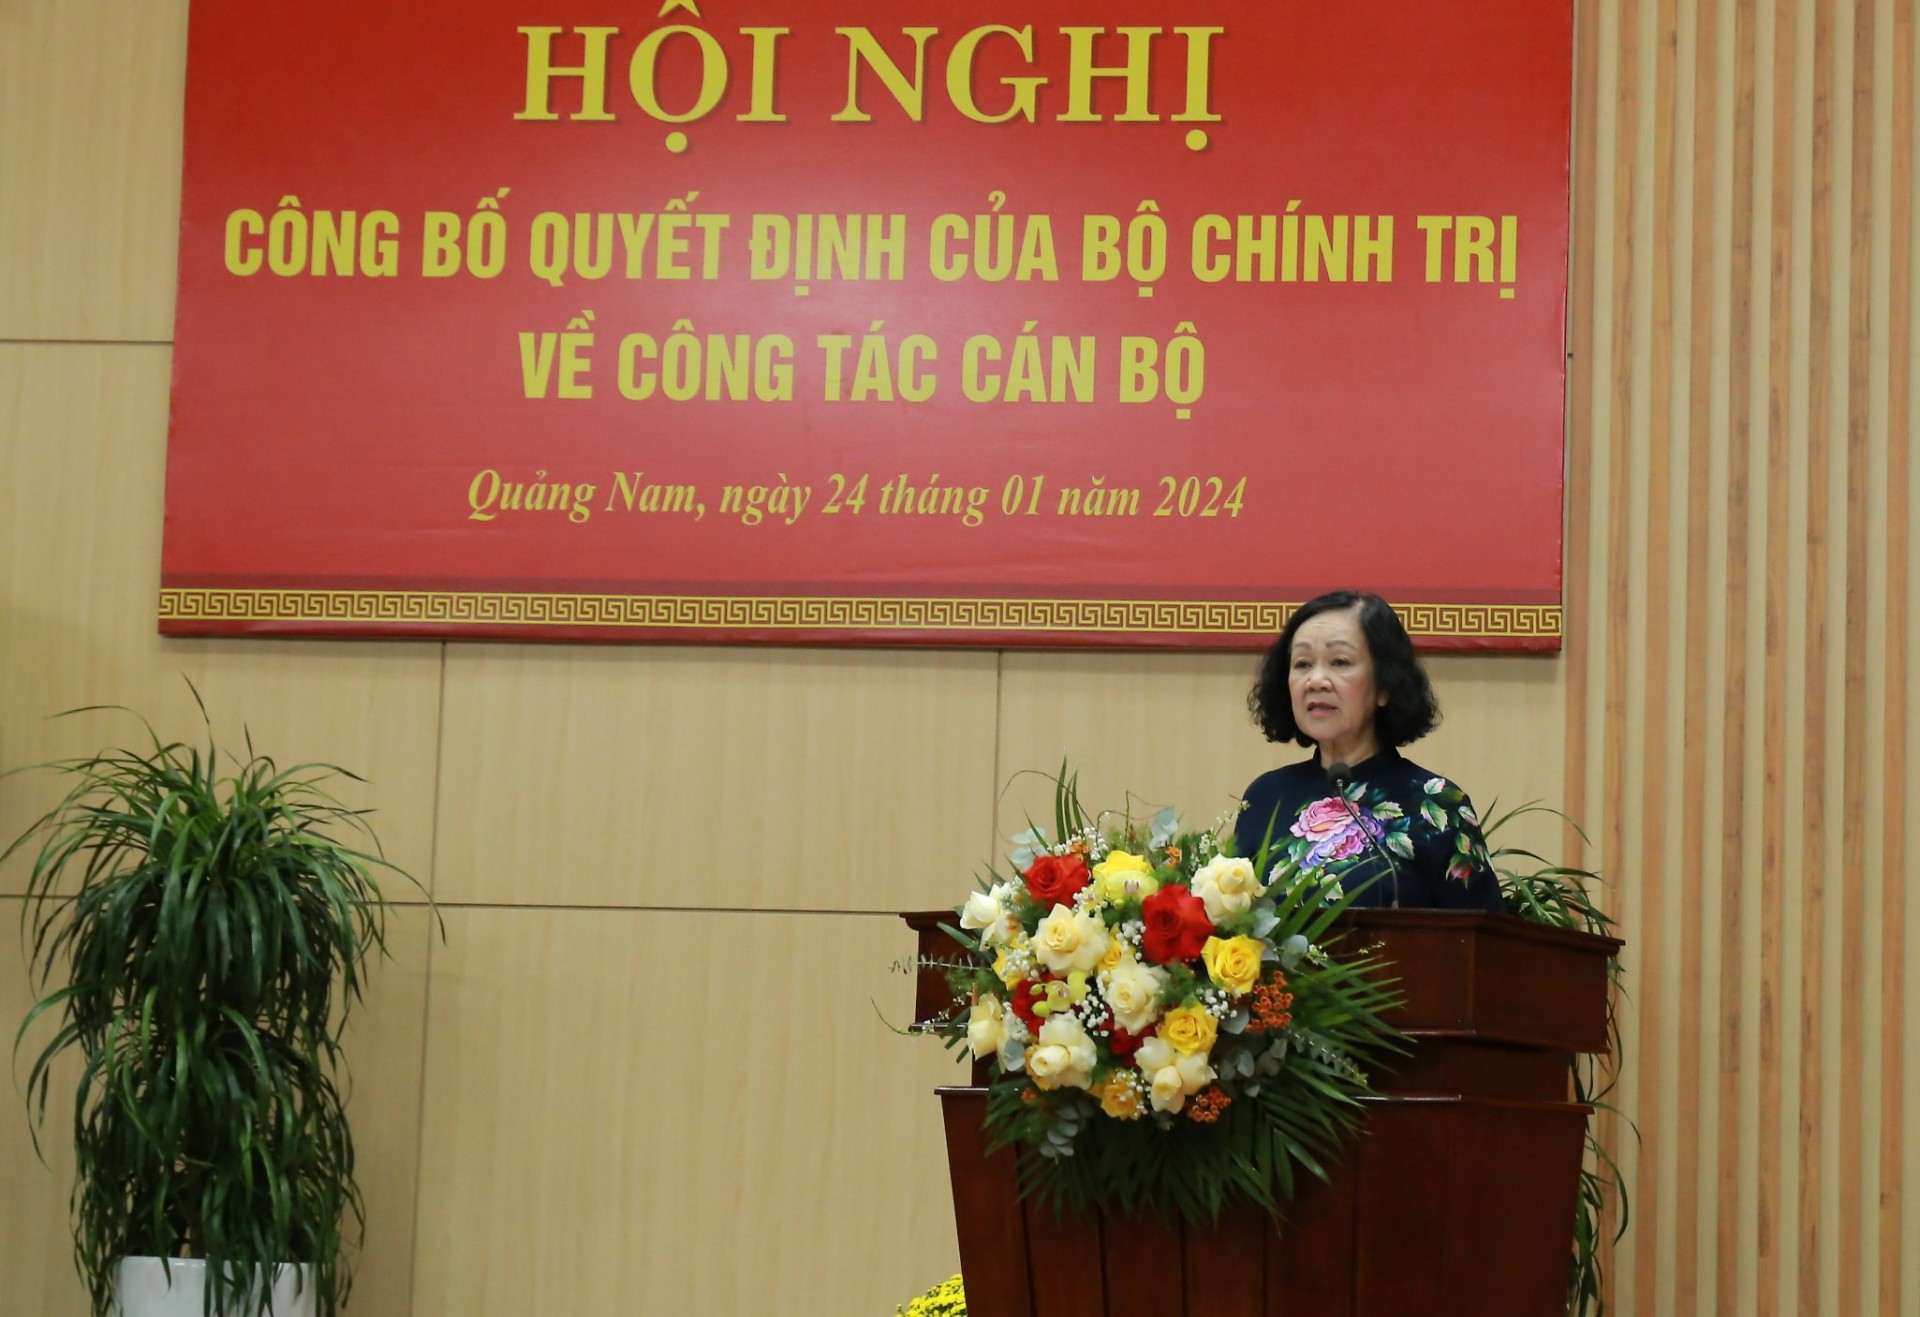 Bộ Chính trị điều động, chỉ định ông Lương Nguyễn Minh Triết giữ chức Bí thư Tỉnh uỷ Quảng Nam